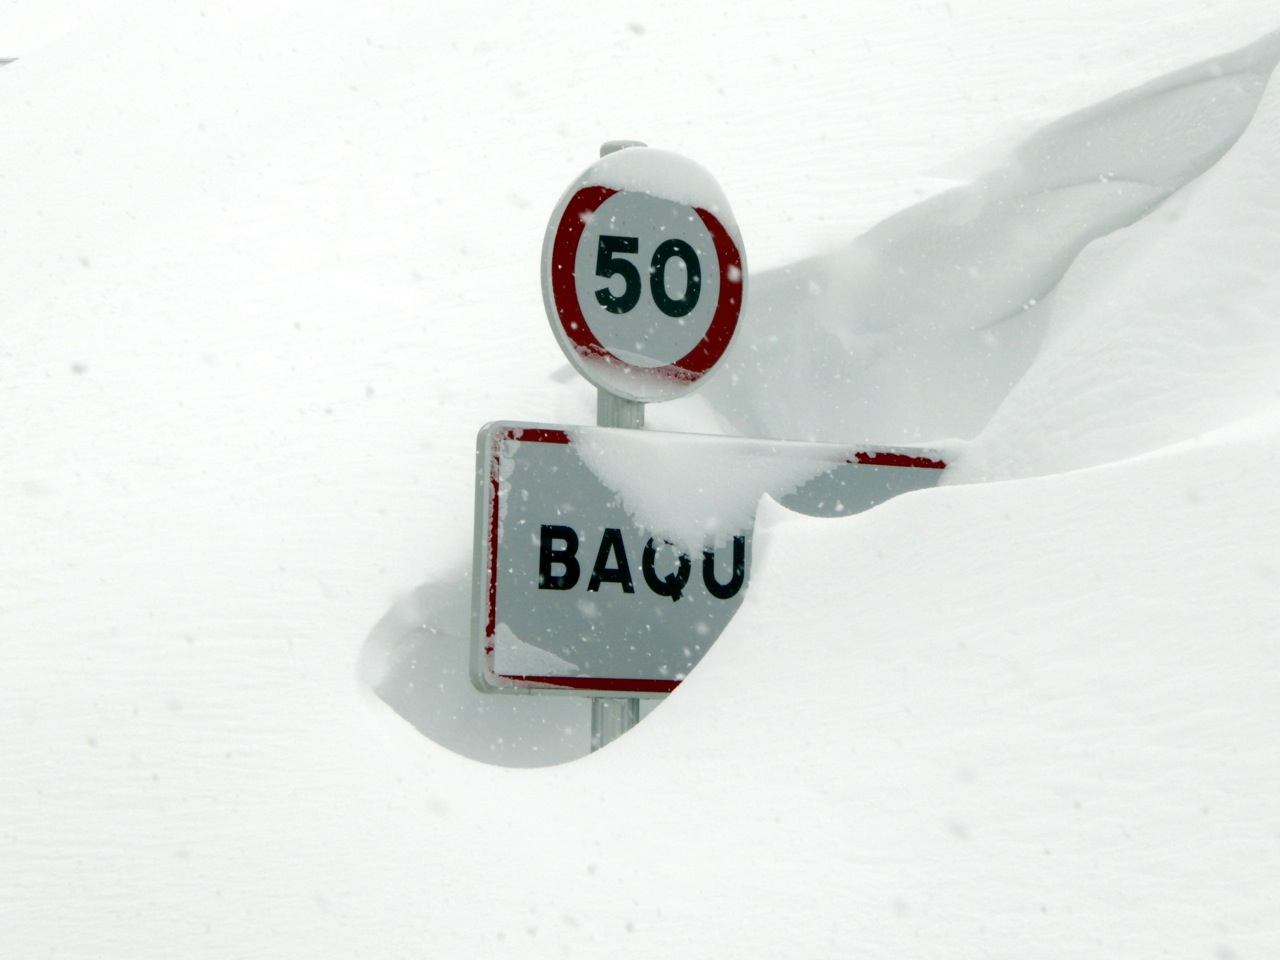 Las cantidades de nieve de este invierno: hasta 9 metros en Baqueira Beret